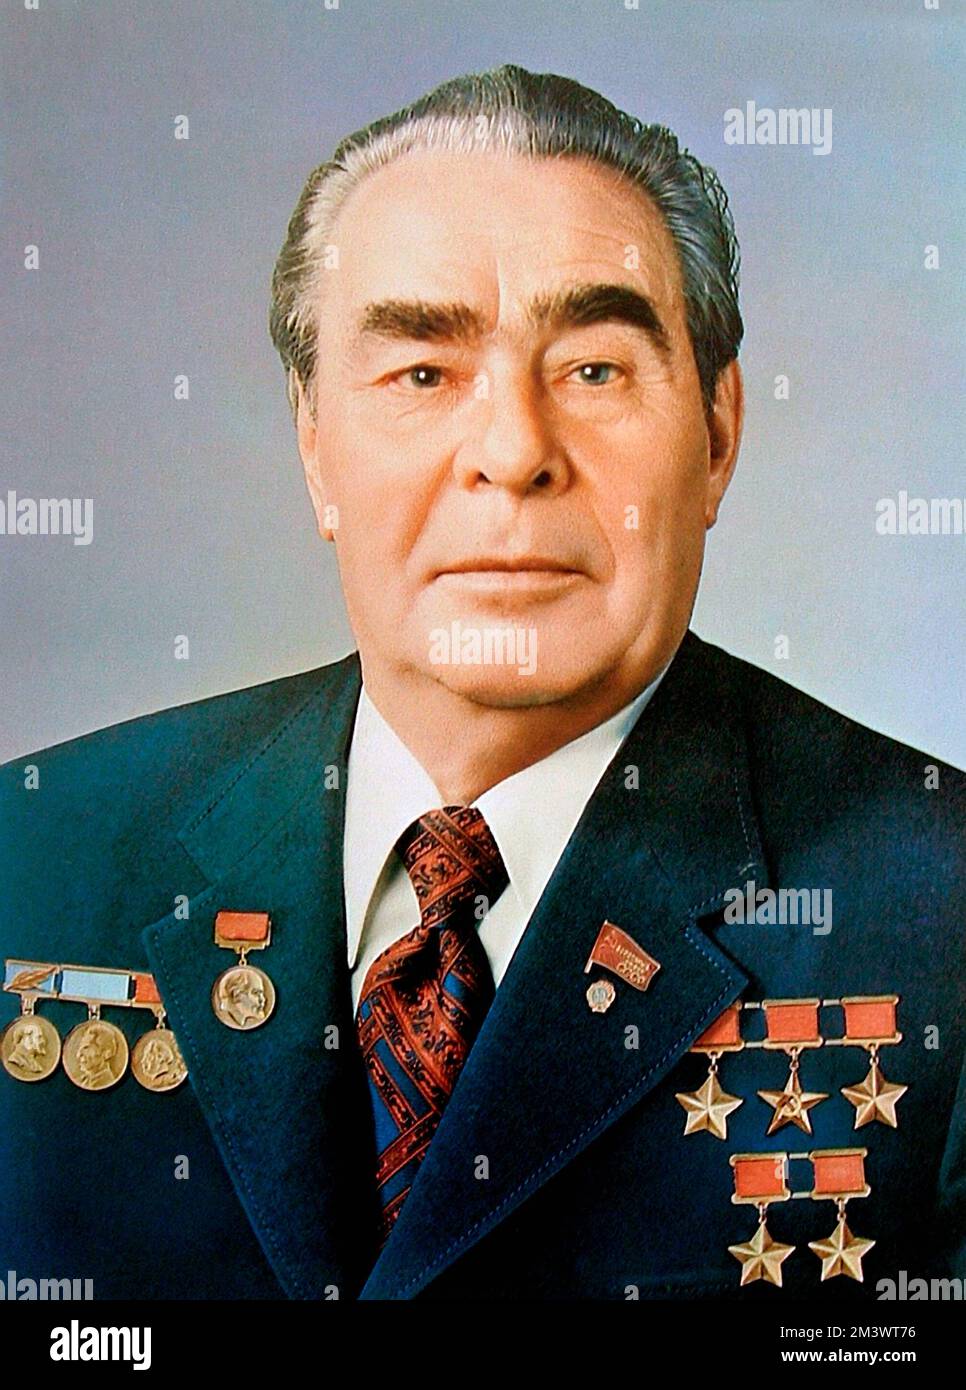 Leonid Iljitsch Breschnew war ein sowjetischer Führer und Politiker, der USSR.between 1964 und 1982 Generalsekretär der Kommunistischen Partei der Sowjetunion war Stockfoto